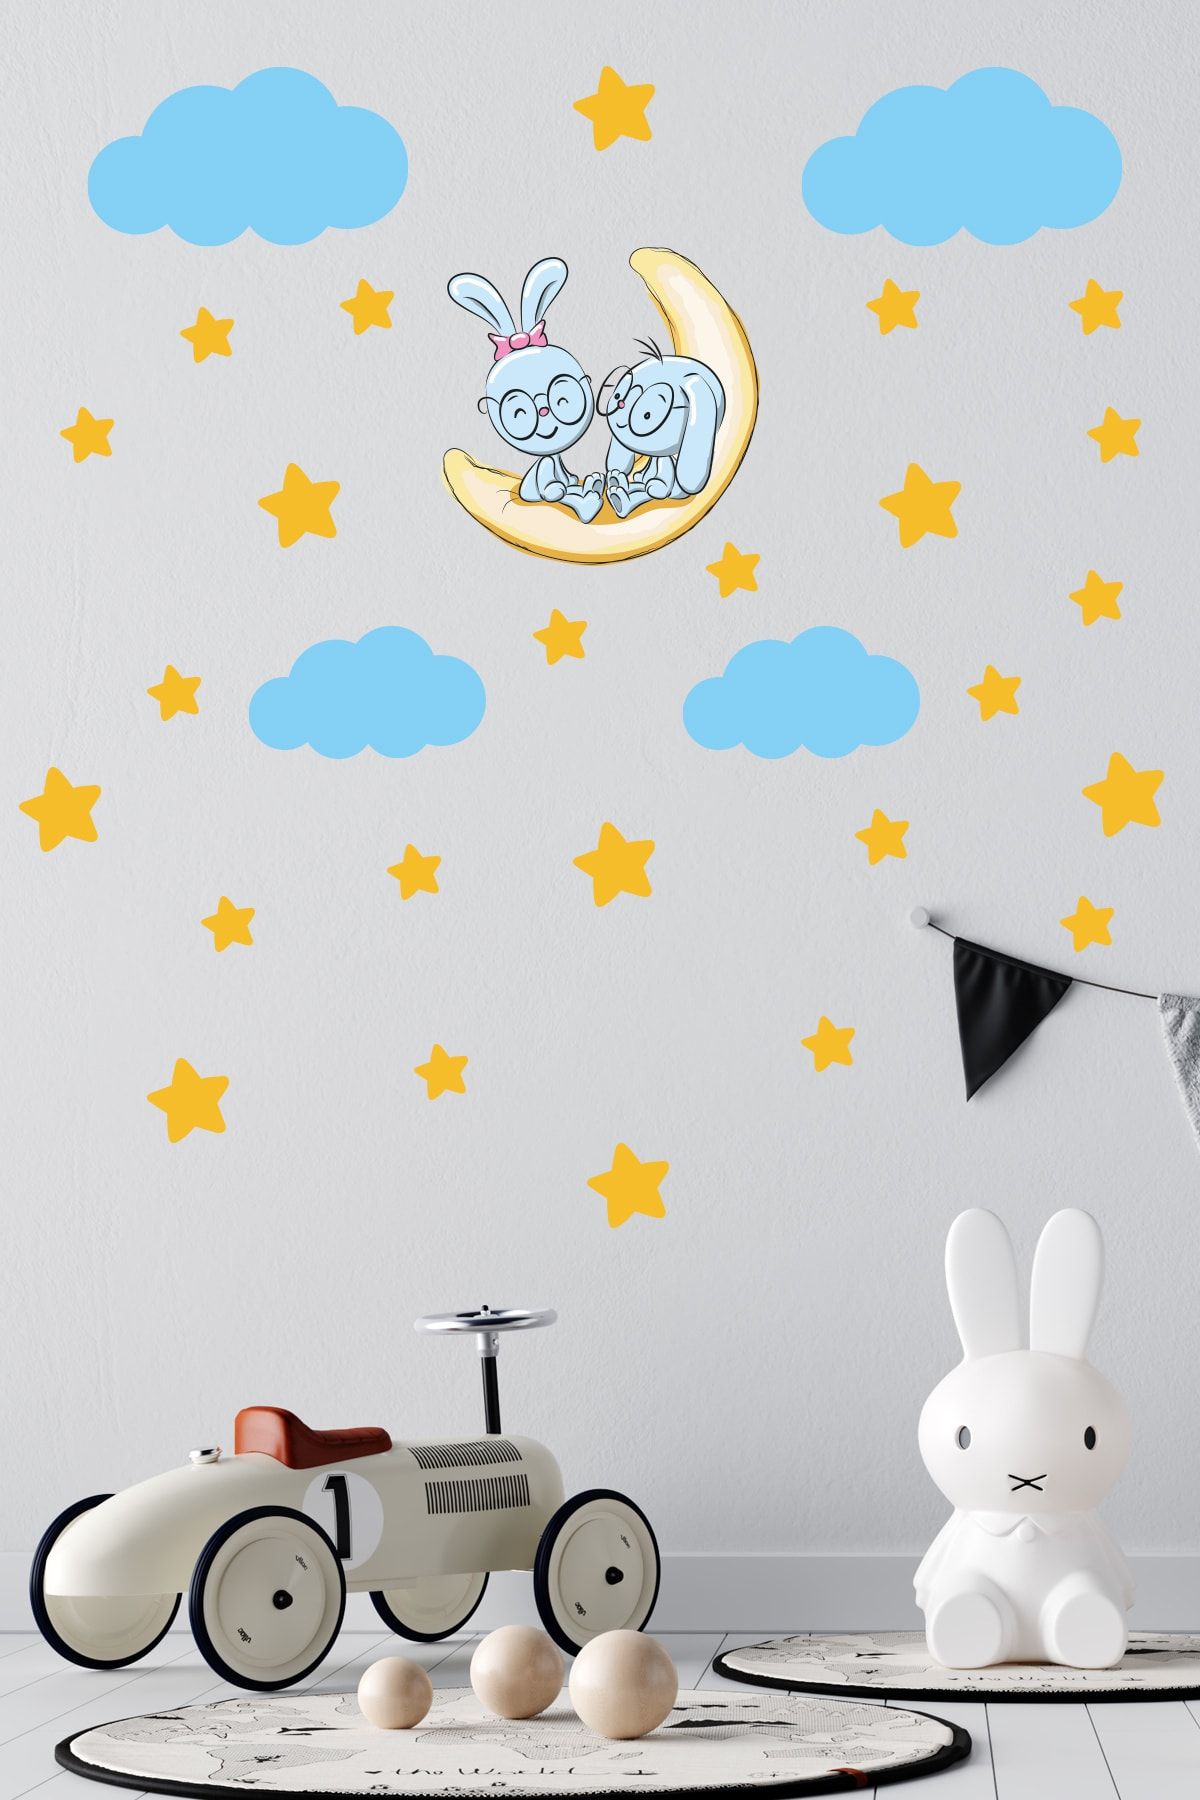 Tilki Dünyası Sevimli Tavşanlar Sarı Yıldızlar ve Mavi Bulutlar Dekoratif Bebek Çocuk Odası Duvar Sticker